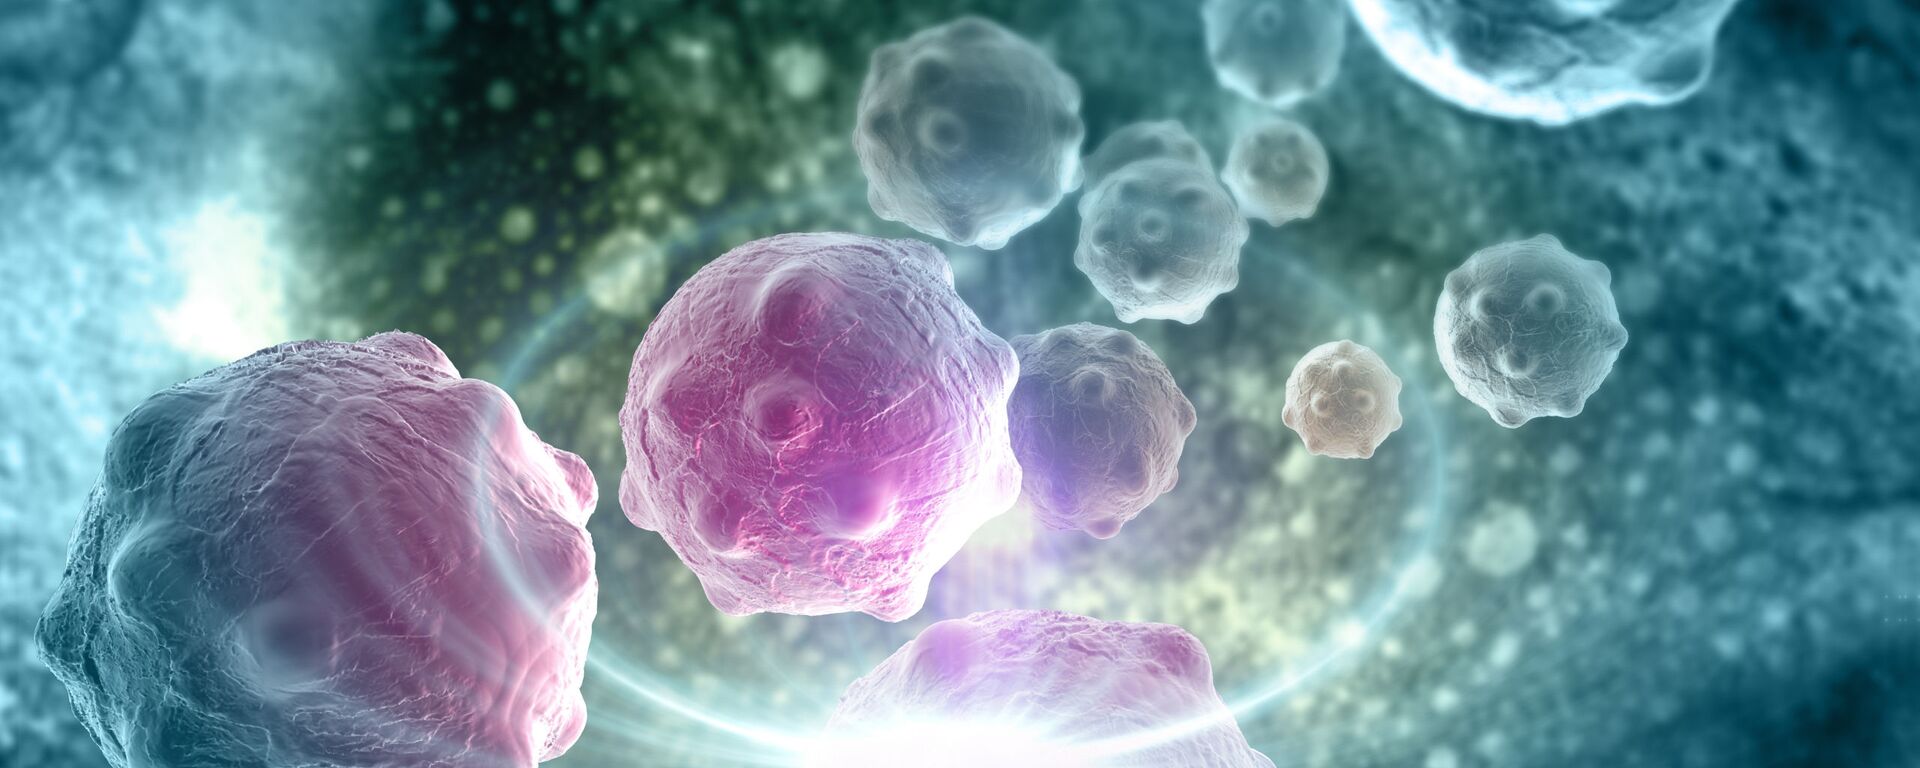 خلايا سرطانية - سبوتنيك عربي, 1920, 21.02.2018